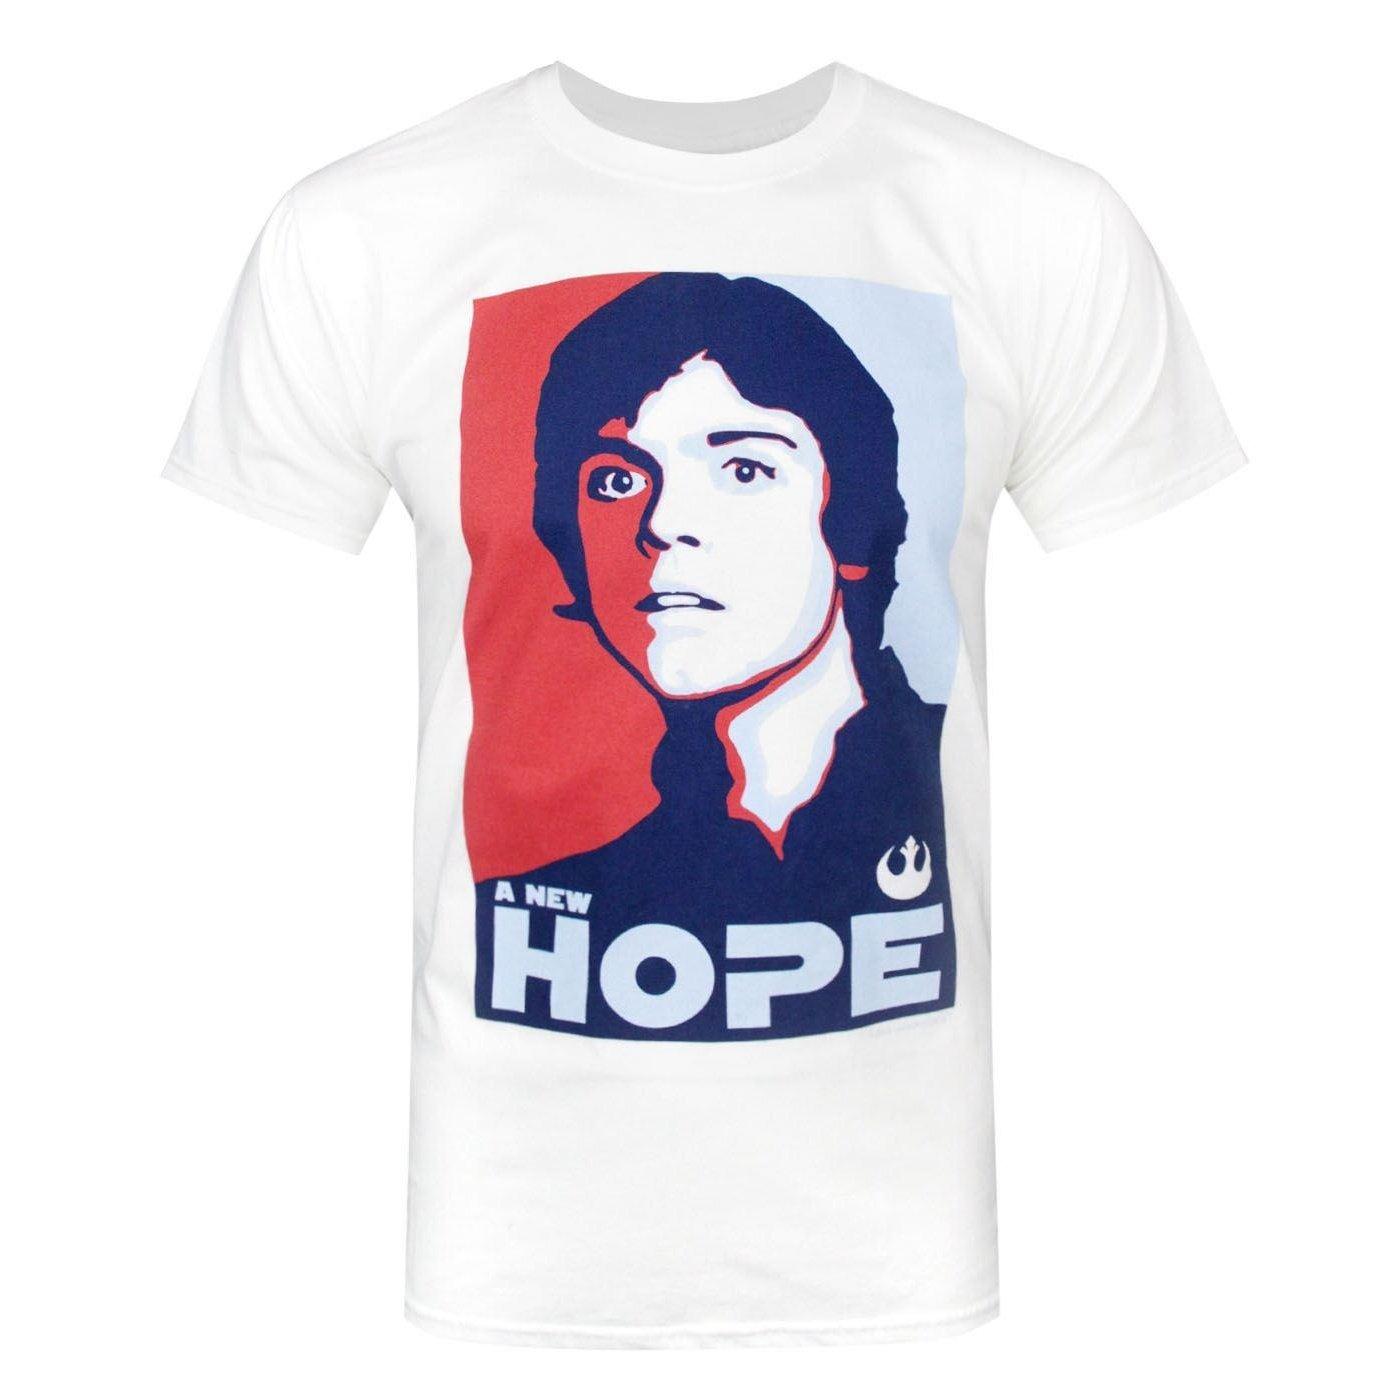 Offizielles Luke Skywalker A New Hope Tshirt Herren Weiss S von STAR WARS